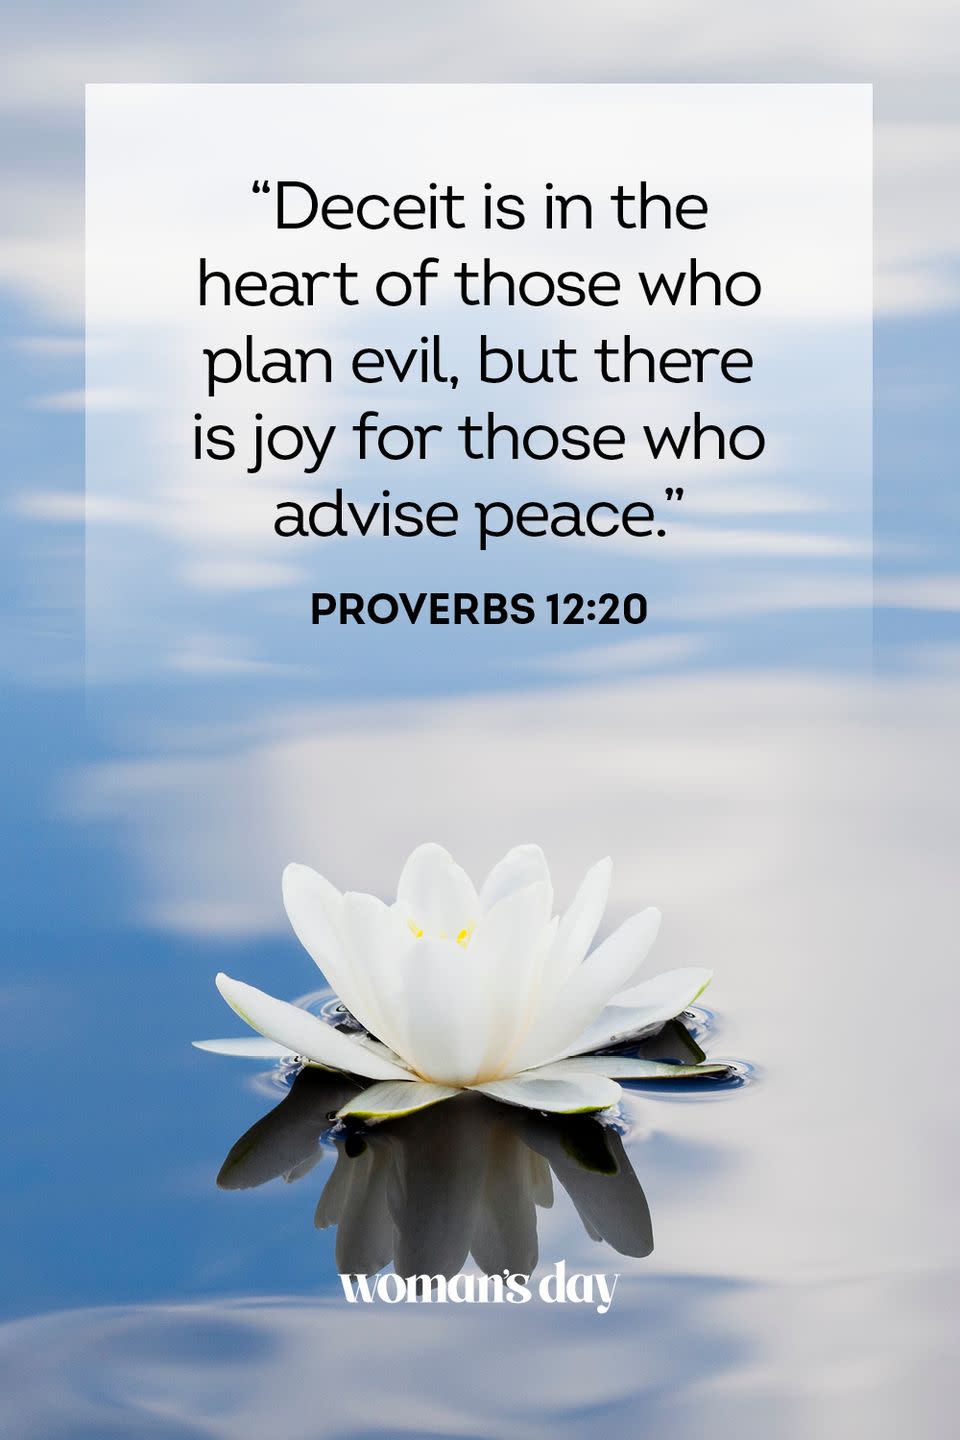 2) Proverbs 12:20